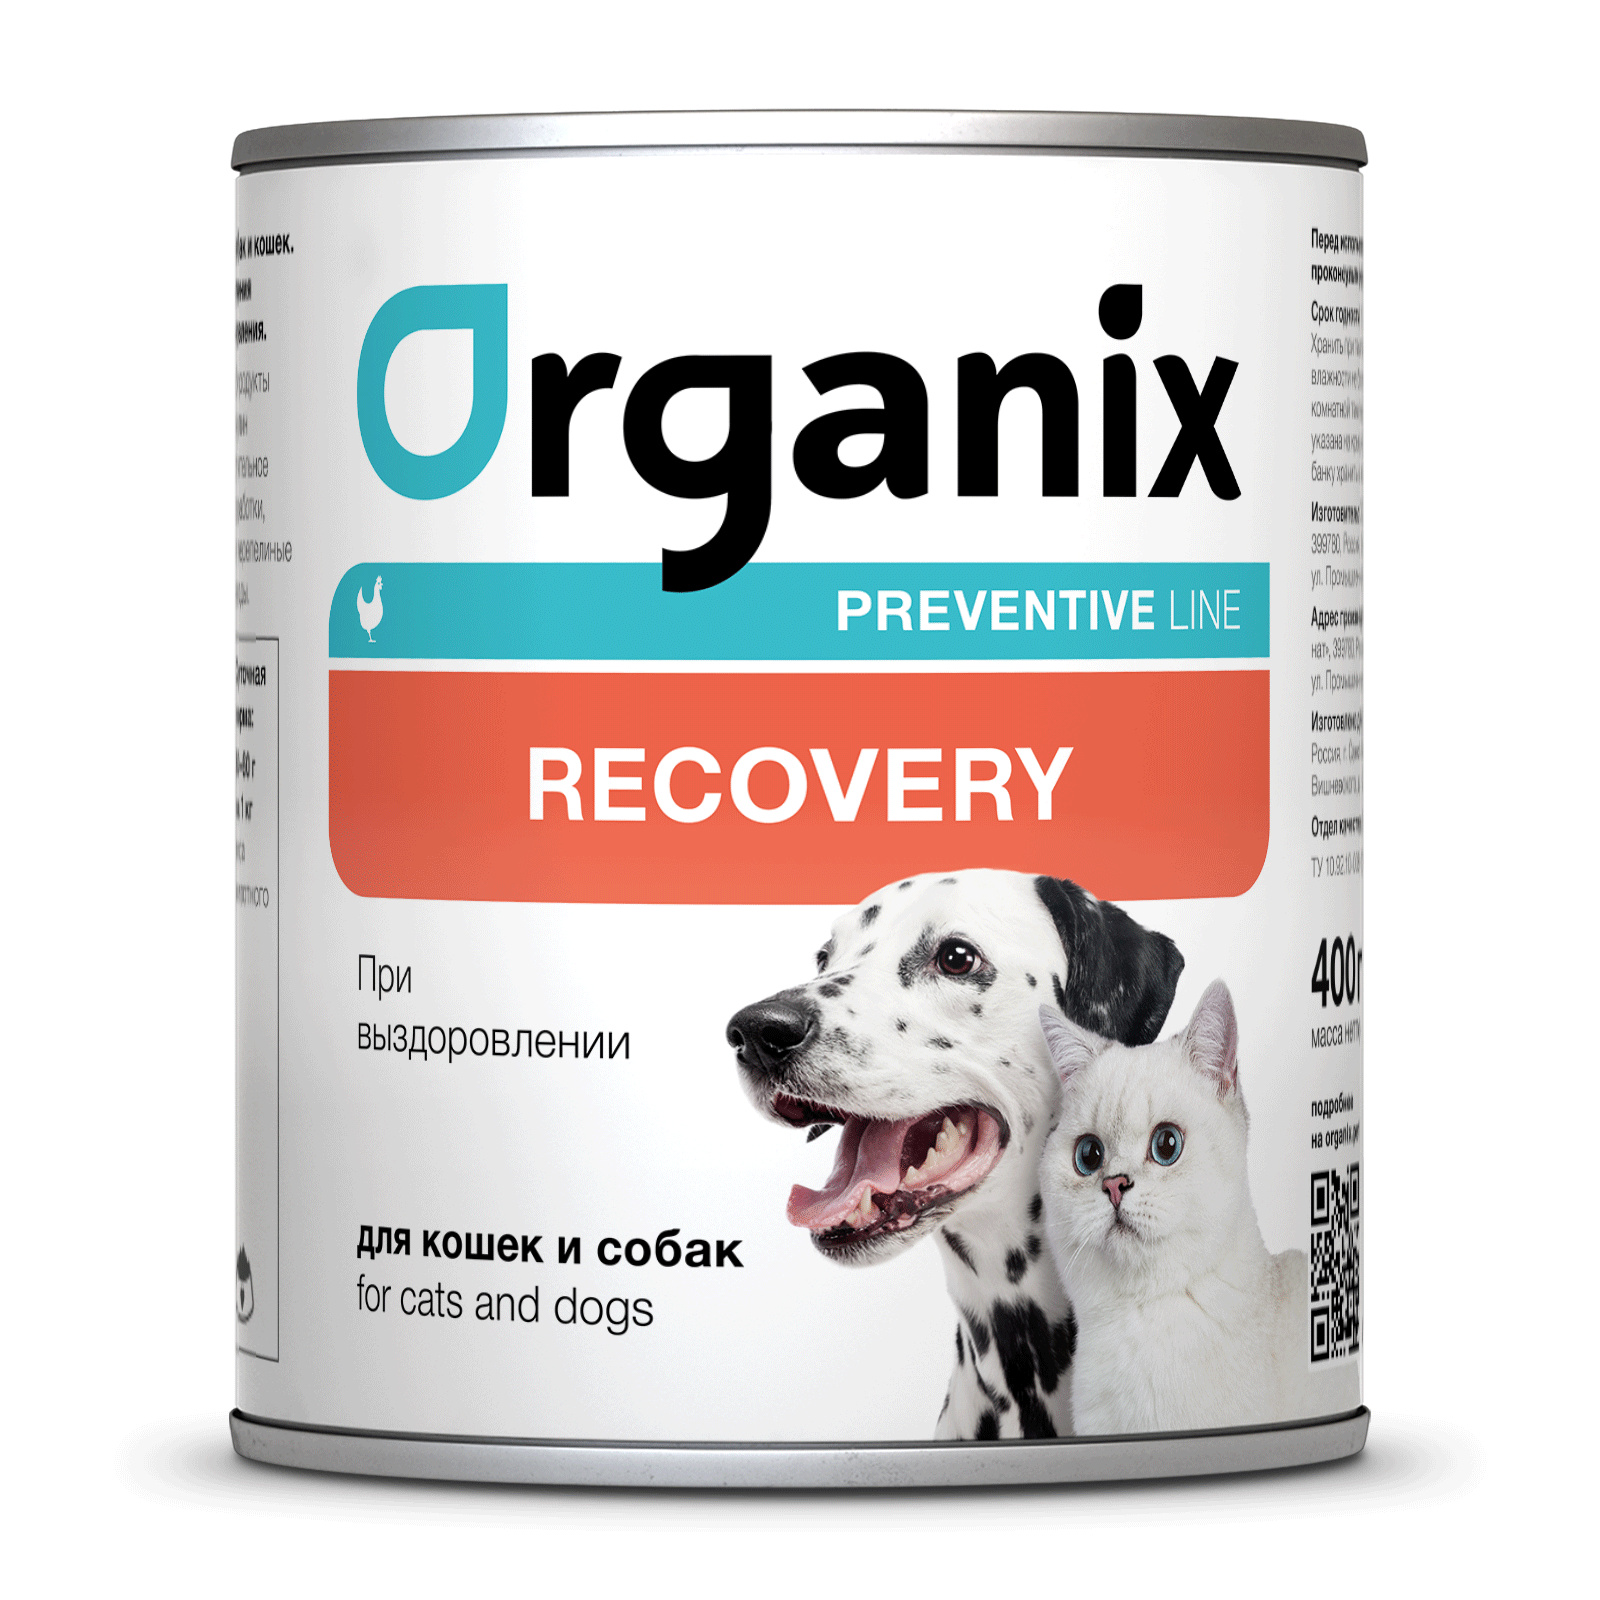 Organix Preventive Line консервы Organix Preventive Line консервы recovery для кошек и собак в период анорексии, выздоровления и послеоперационного восстановления (240 г)